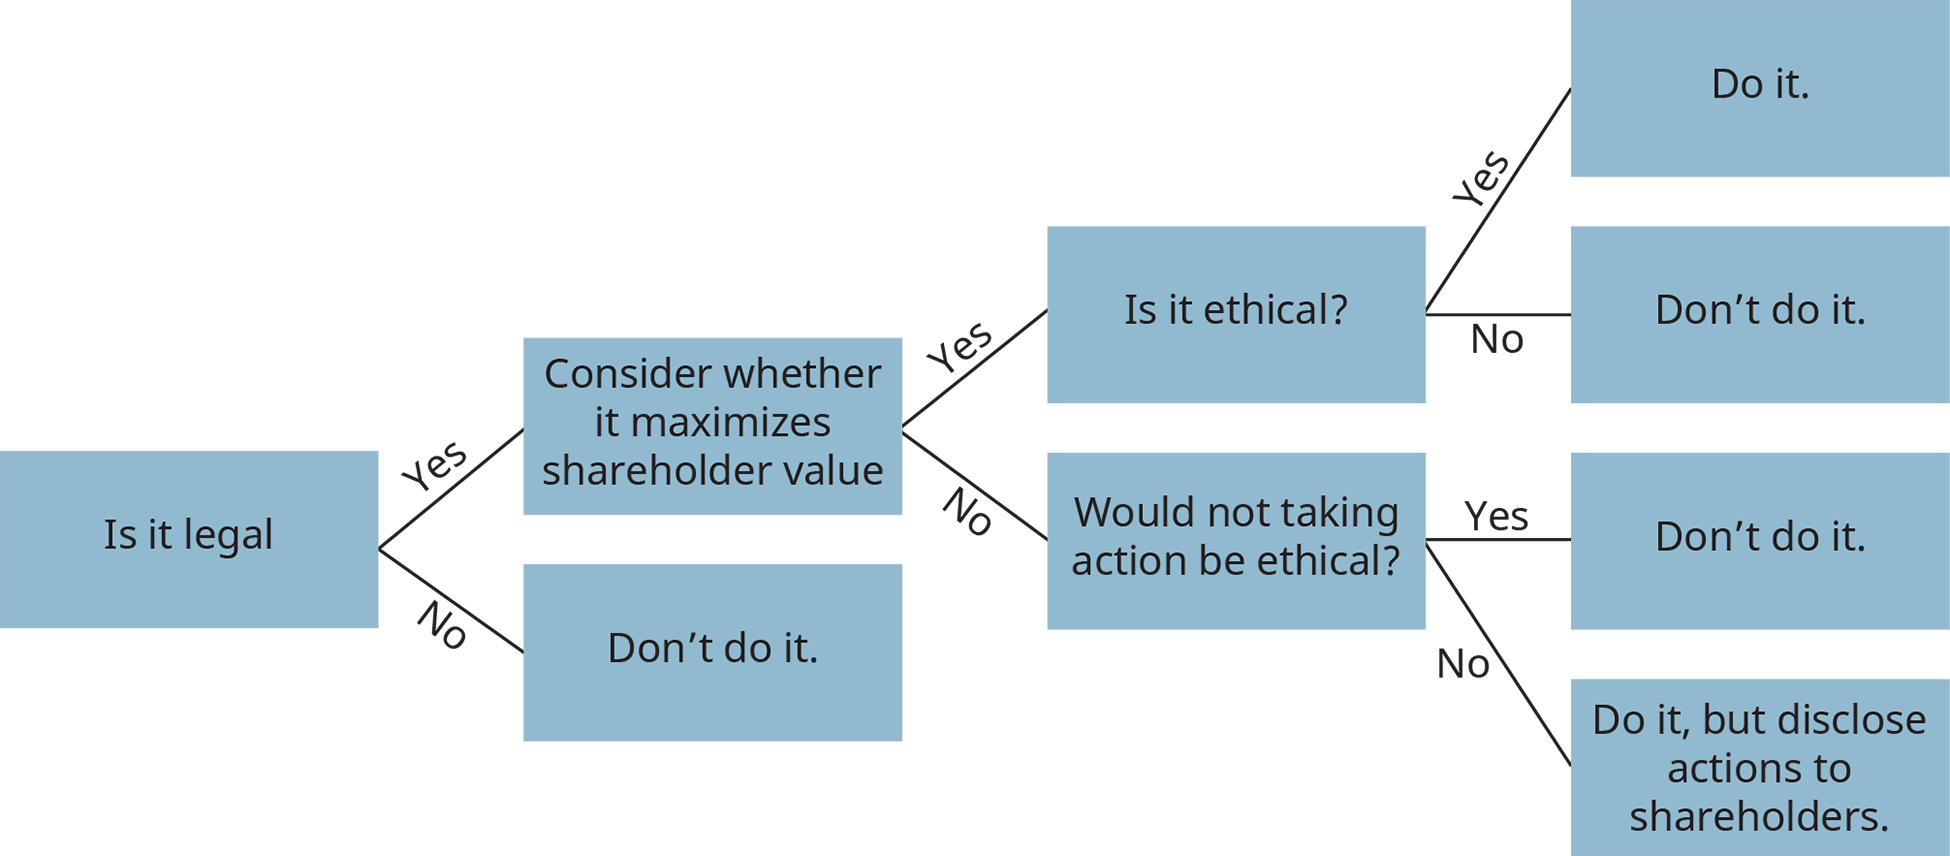 决策树图说明了伦理决策的过程。